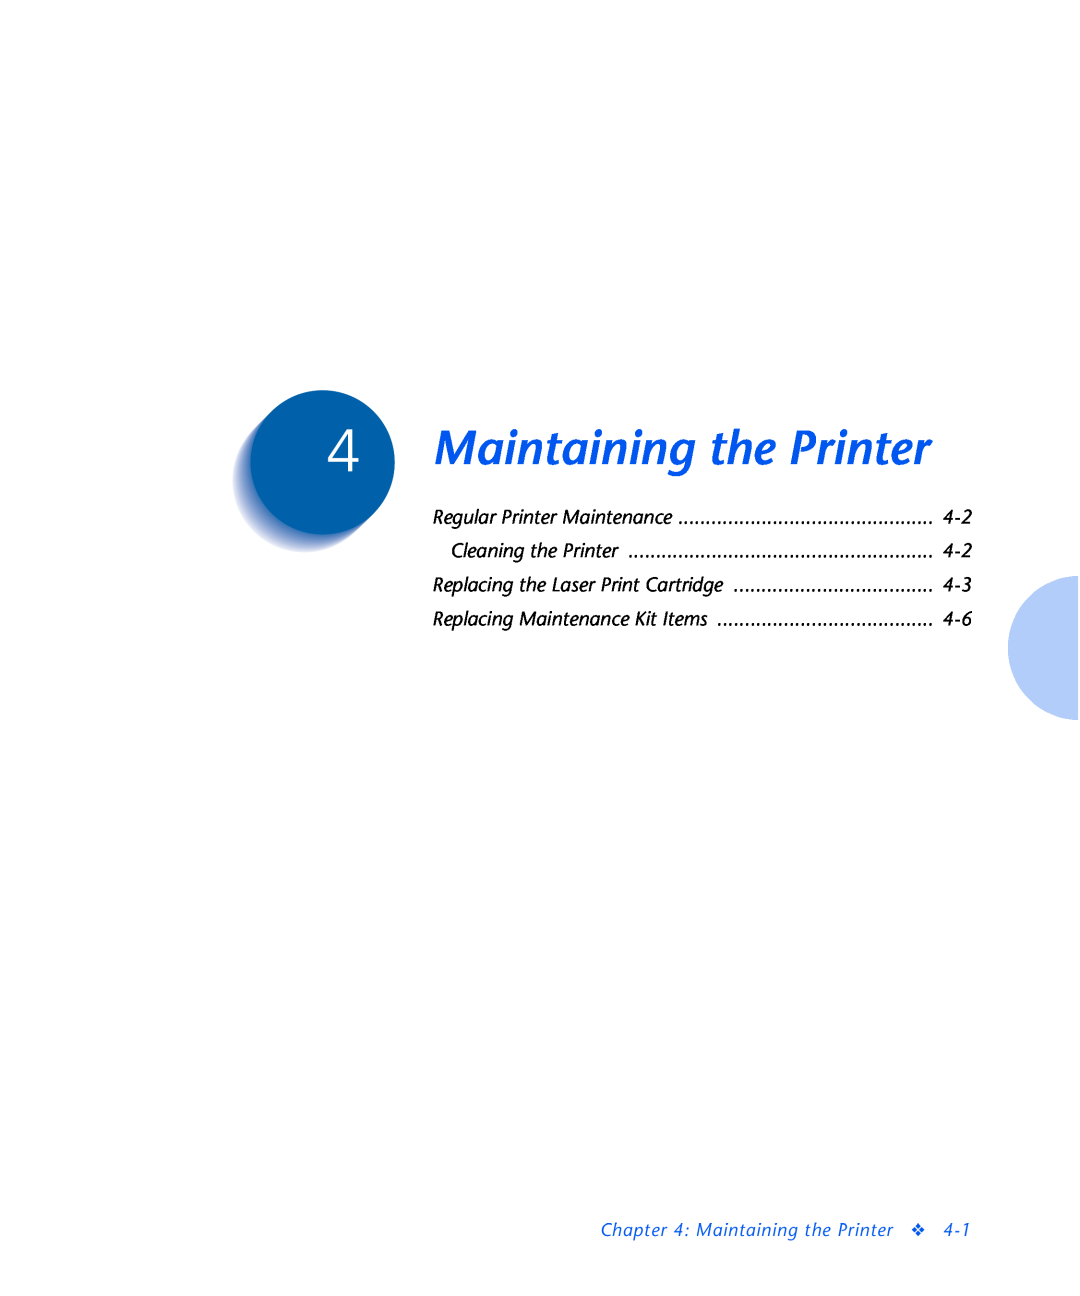 Xerox N2125 Maintaining the Printer, Regular Printer Maintenance, Cleaning the Printer, Replacing Maintenance Kit Items 